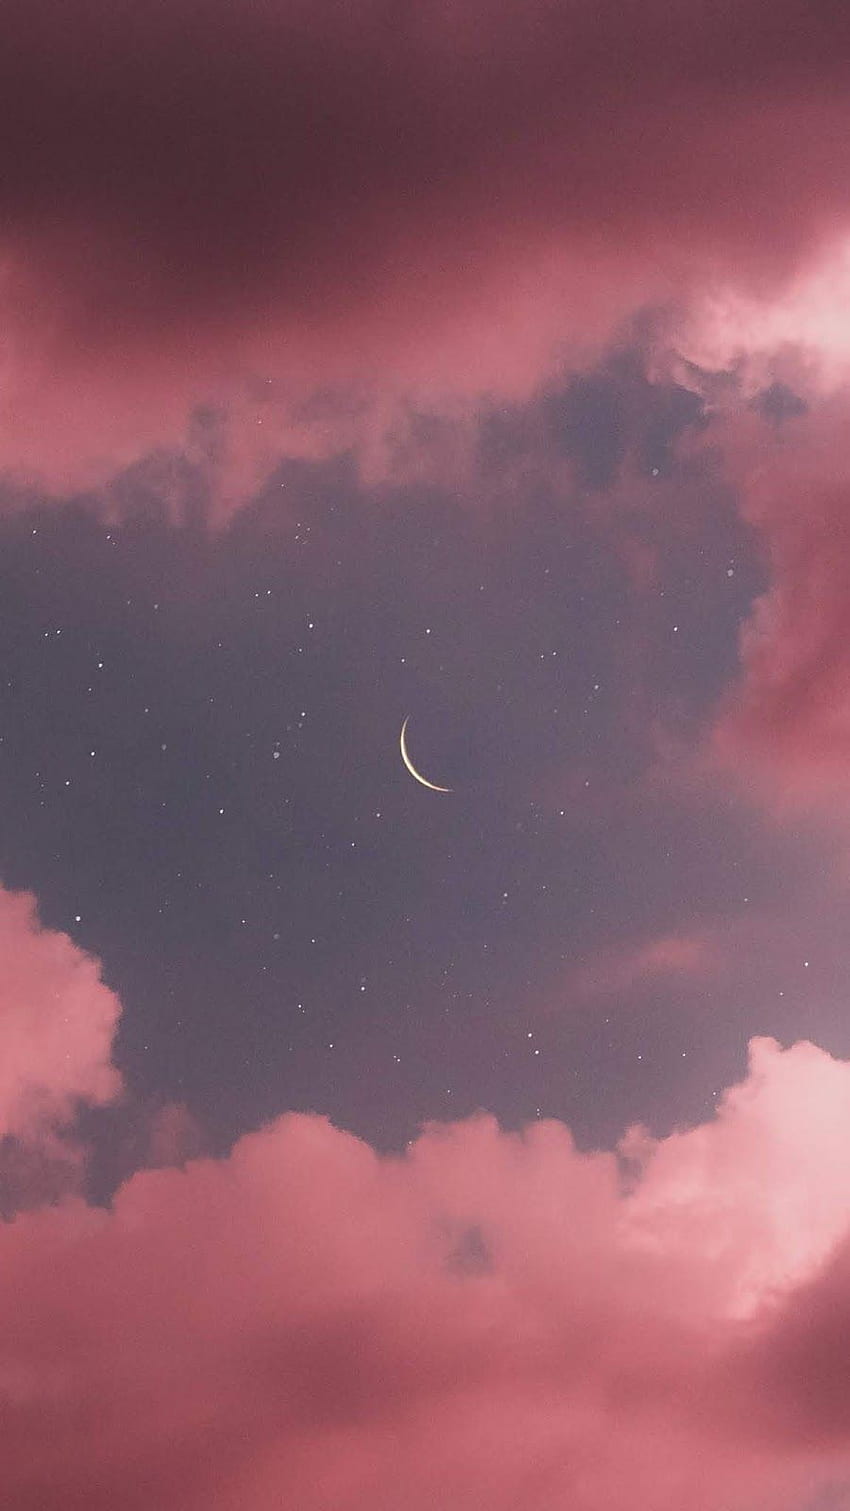 Một màn đêm đẹp như cổ tích, với một ánh trăng hồng rực rỡ chiếu sáng, bạn sẽ thực sự cảm thấy thư giãn và vui tươi khi có hình nền đáng yêu này.